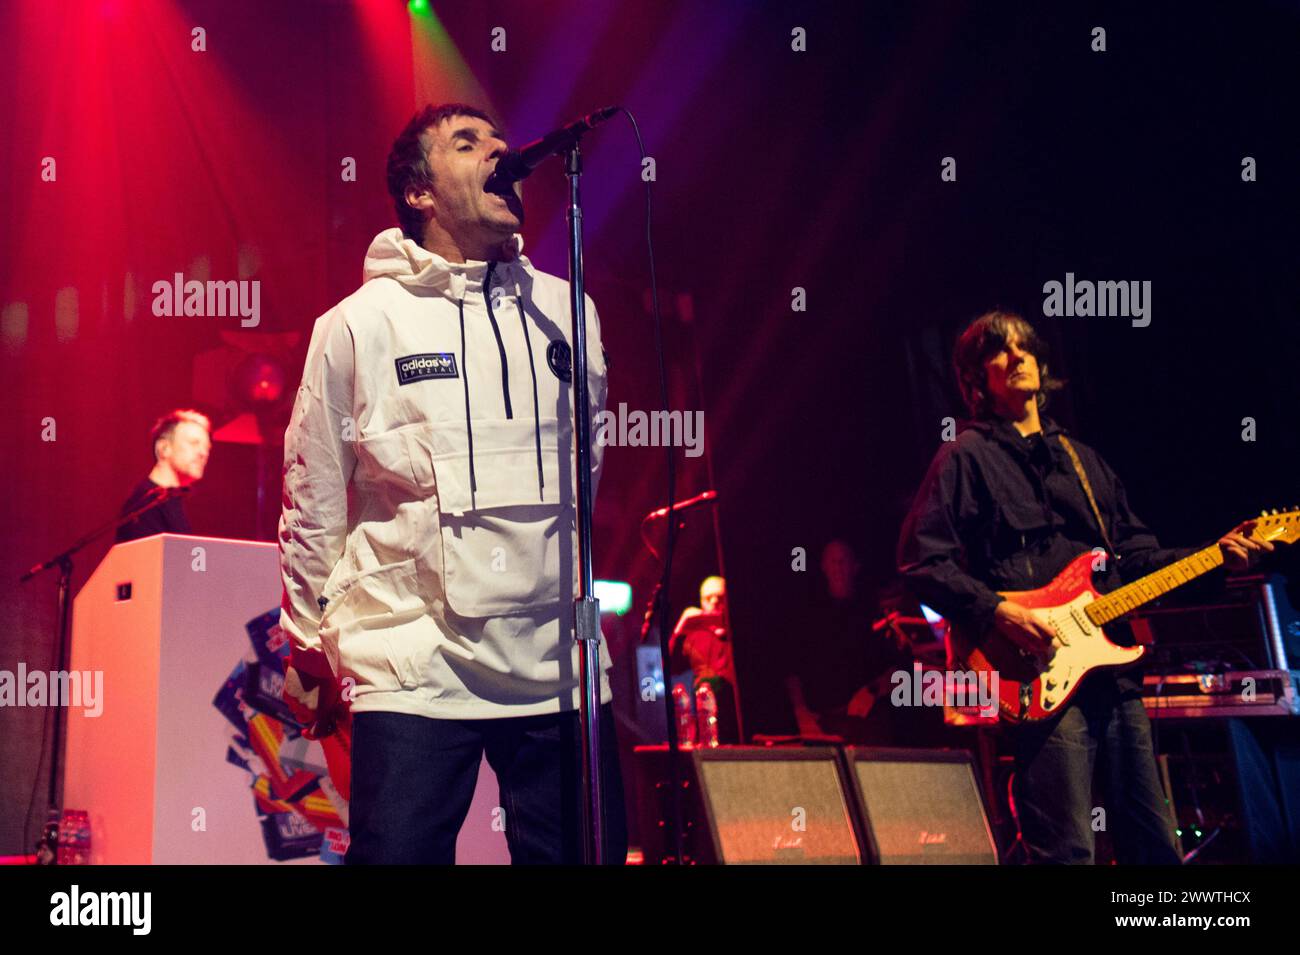 Liam Gallagher e John Squire in Concert a Londra Liam Gallagher e John Squire sul palco all'O2 Forum Kentish Town, Londra. London O2 Forum Kentish Town Regno Unito Copyright: XJohnxBarryx JB2 9214 Foto Stock